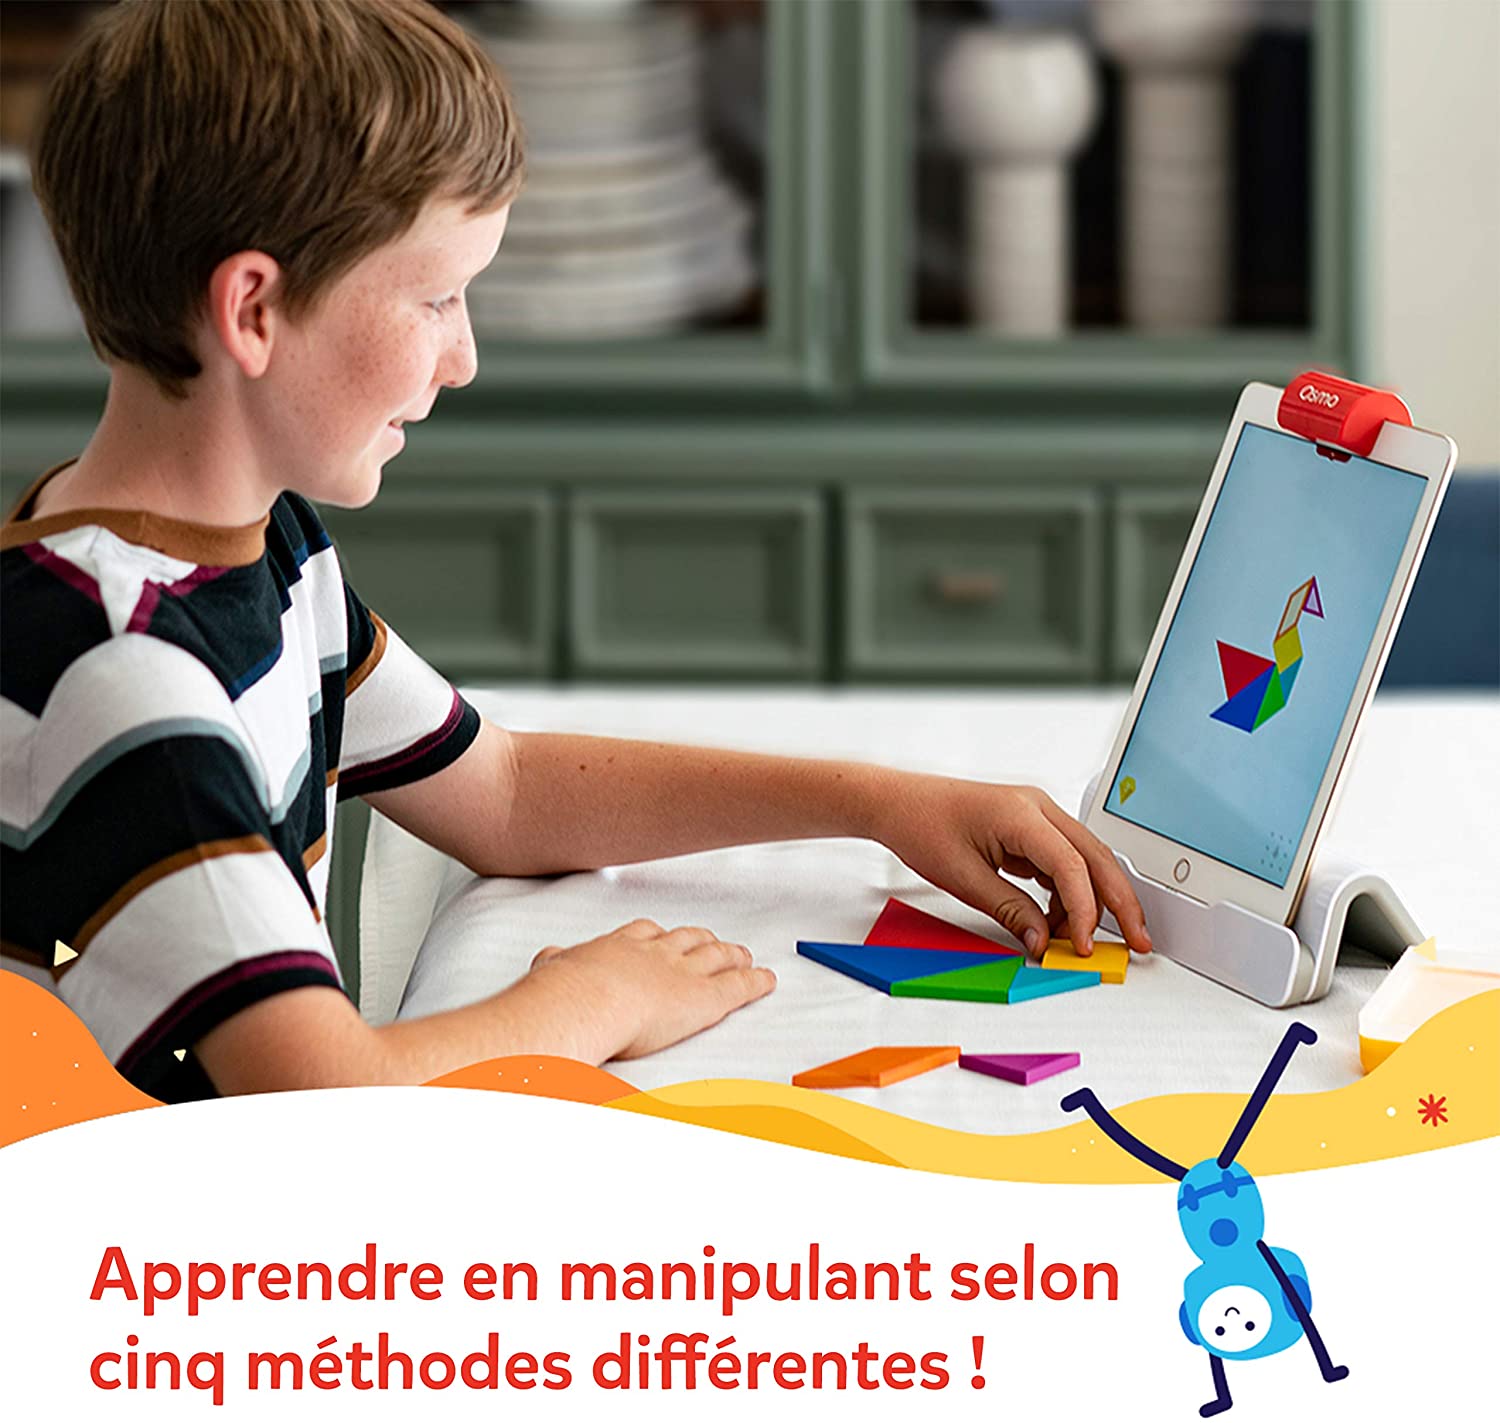 Osmo - Little Genius Starter Kit pour iPad - 4 jeux éducatifs